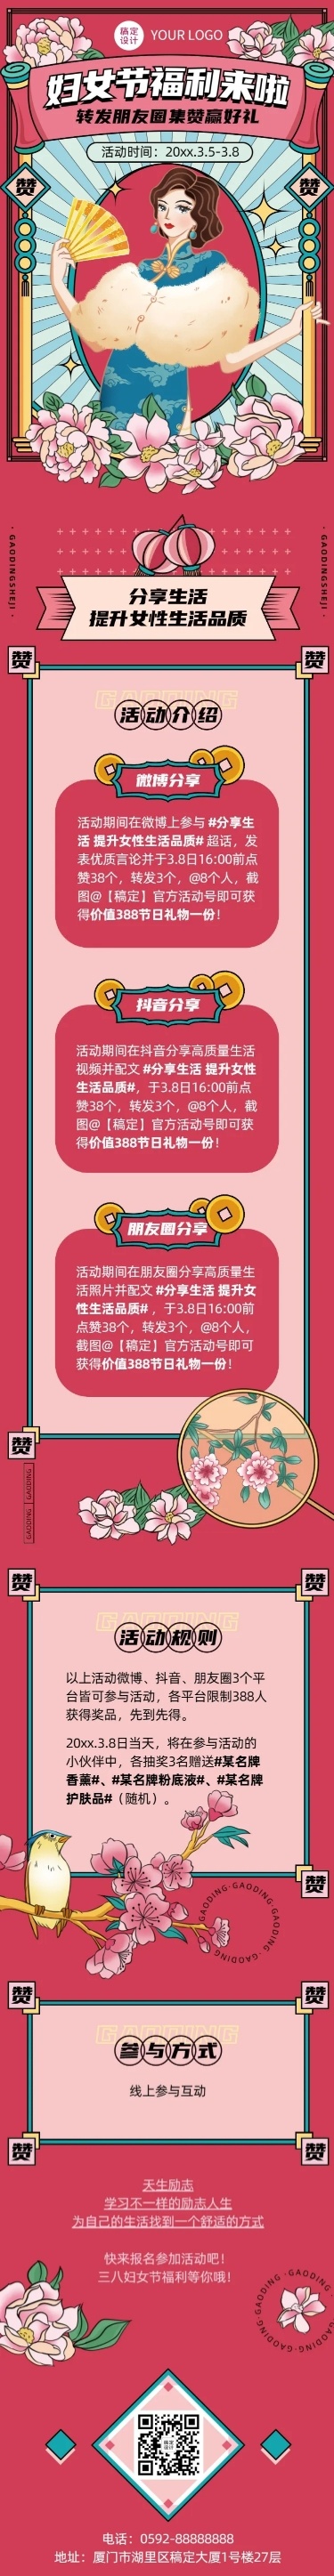 妇女节节日促销集赞活动插画文章长图